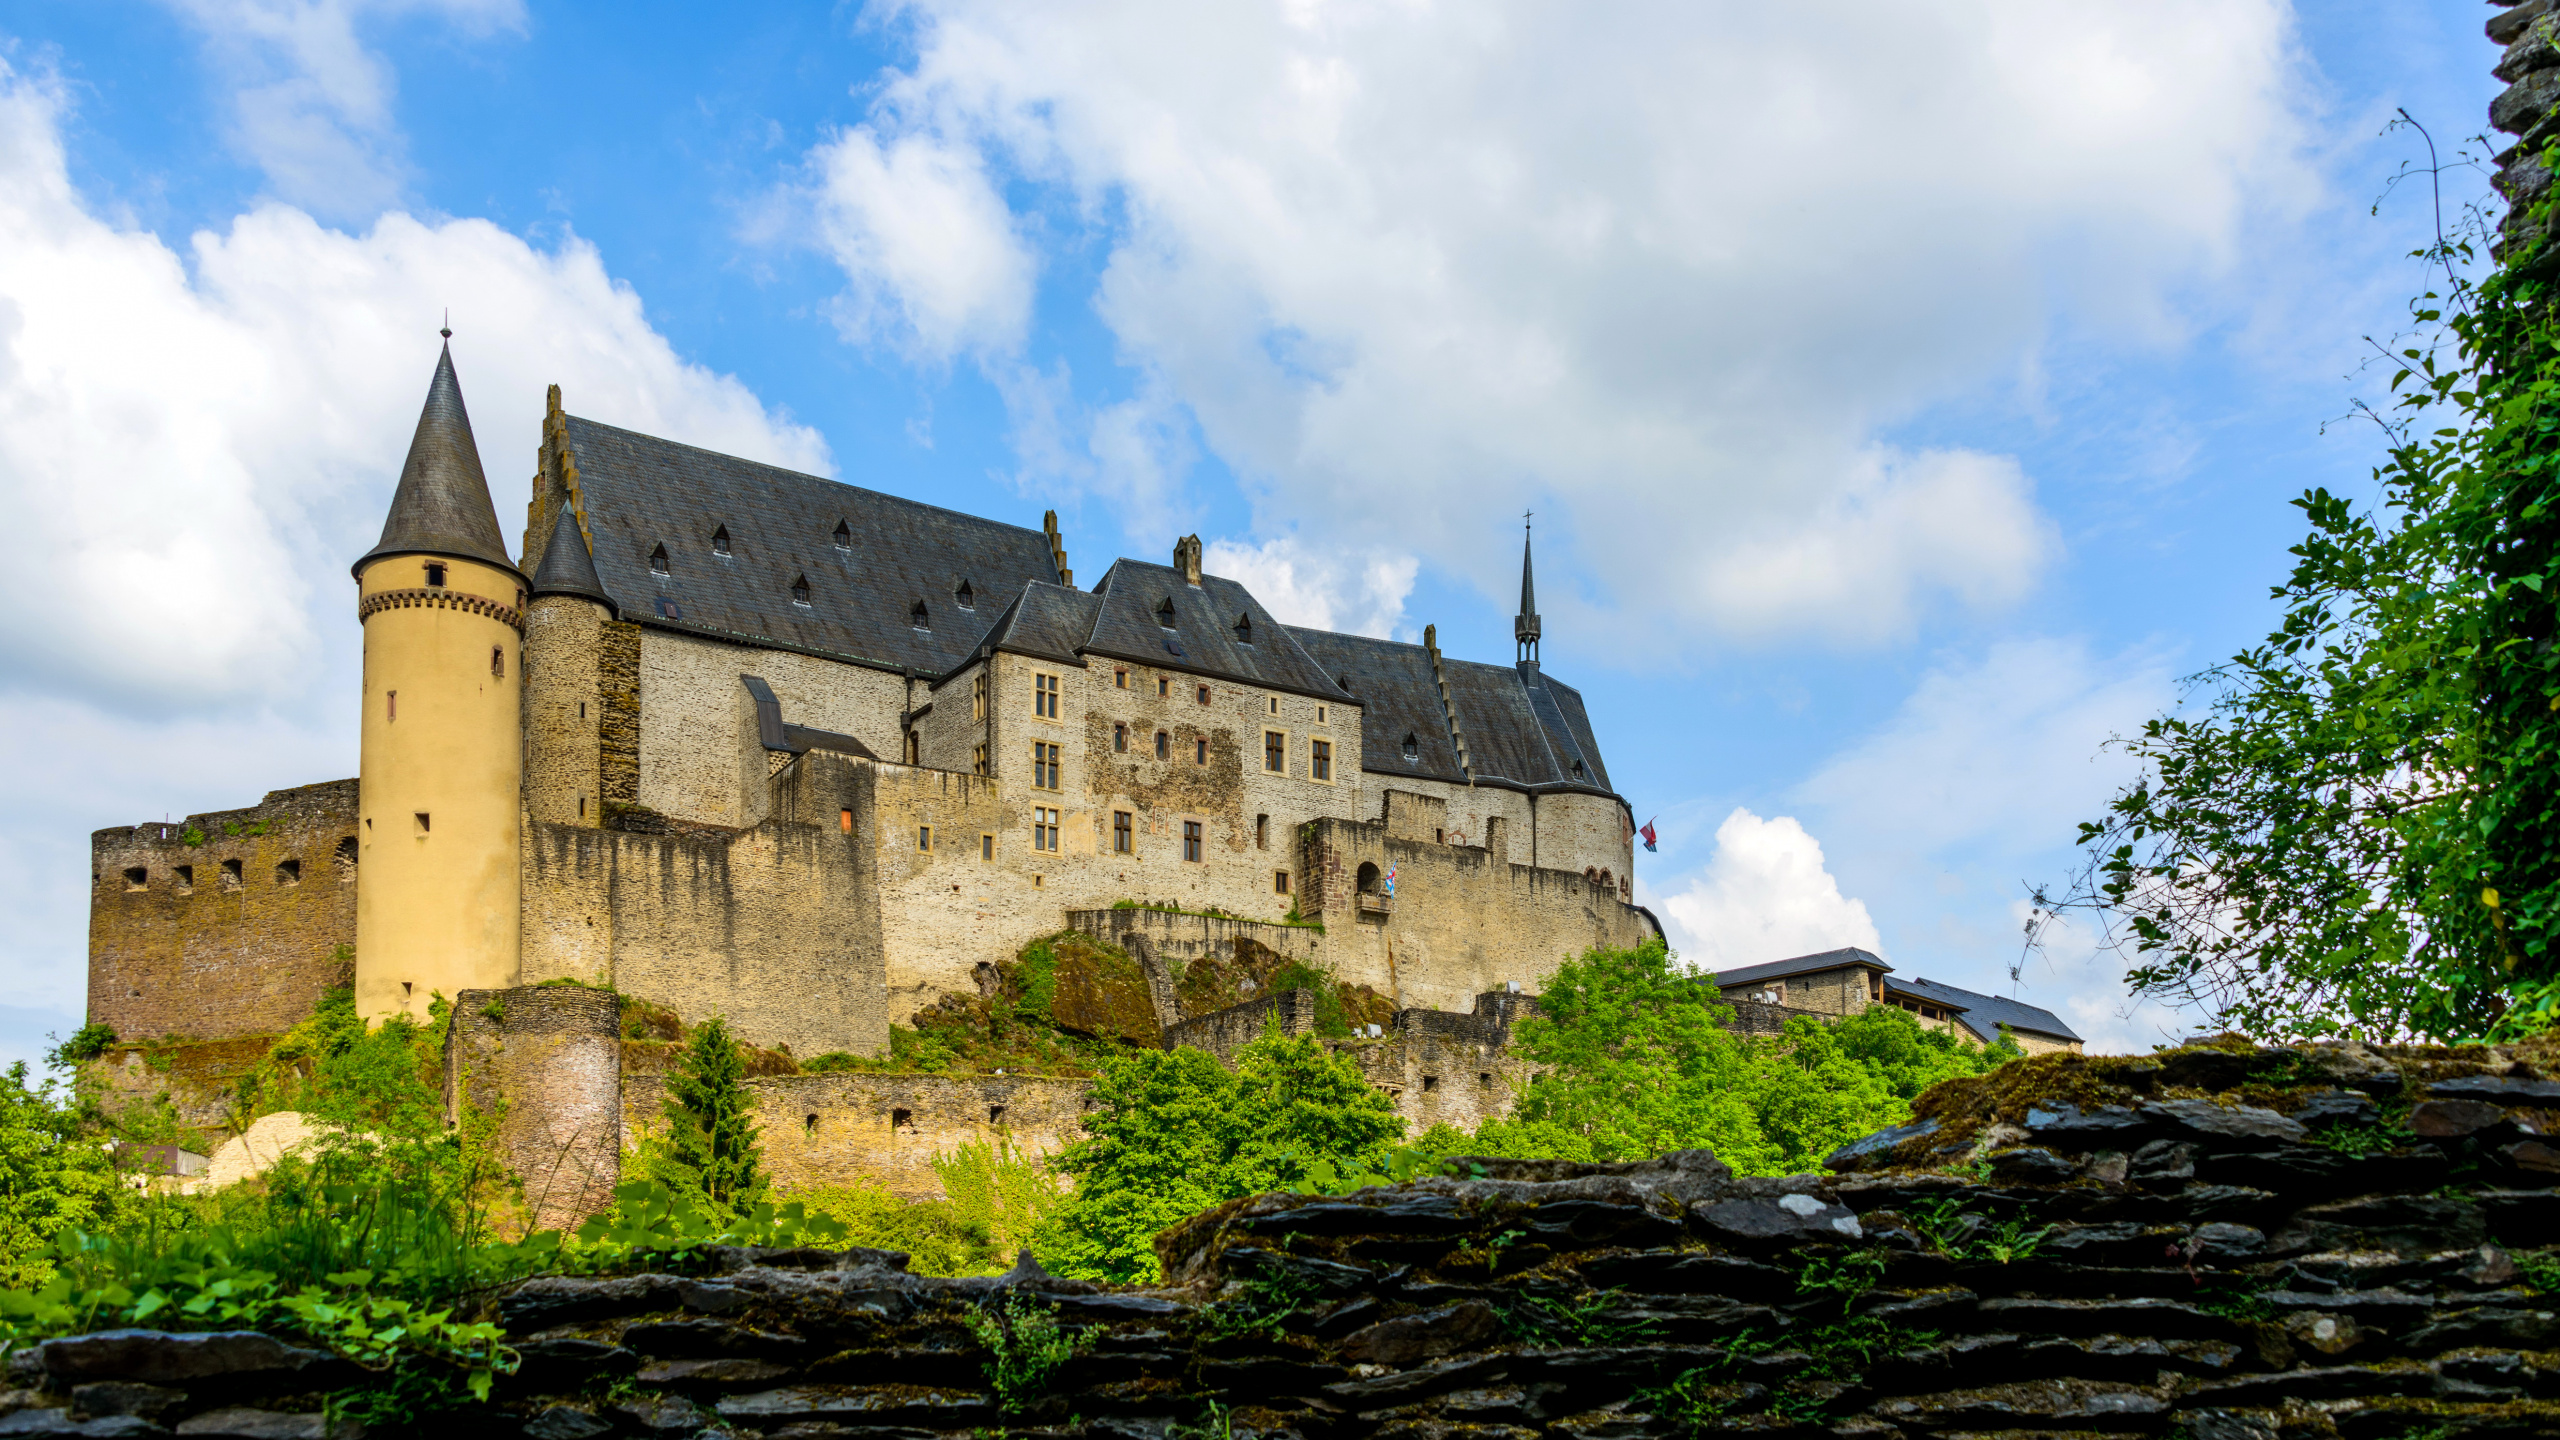 城堡, 中世纪建筑风格, 防御工事, 天空, 城市 壁纸 2560x1440 允许